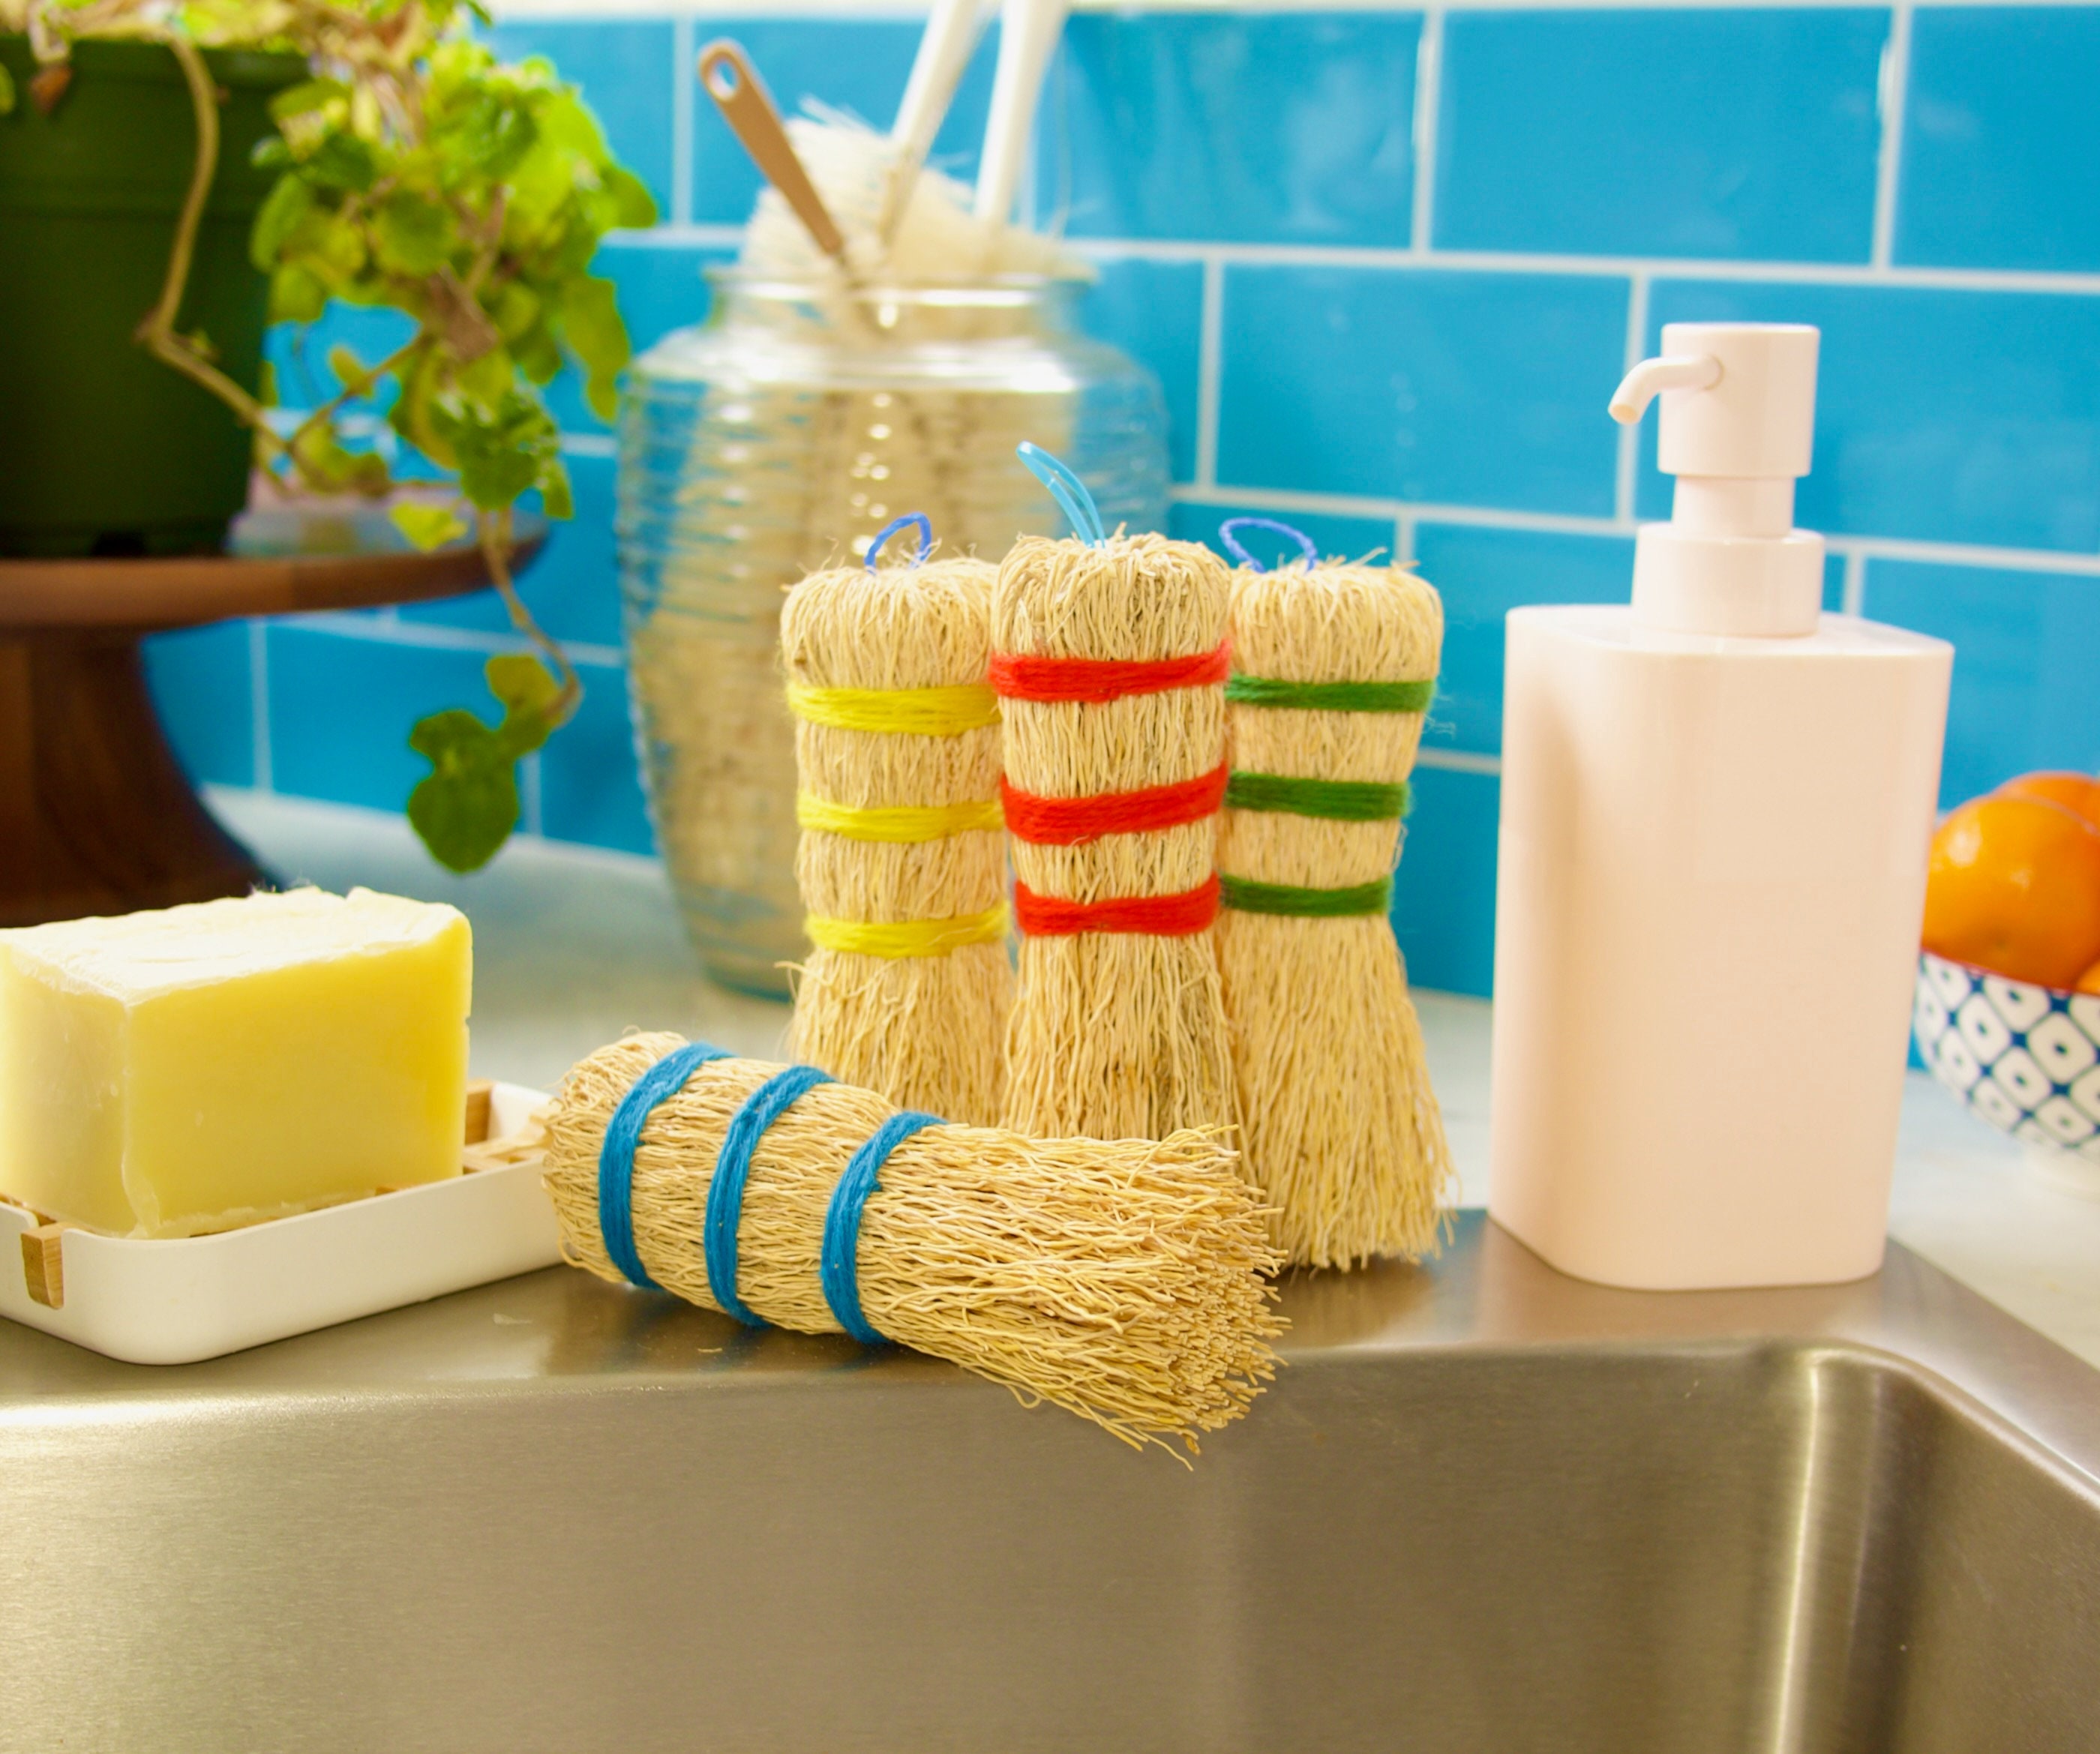 Escobetas de Raiz - Zero Waste Root Dish Scrubbers in 6 Happy Colors